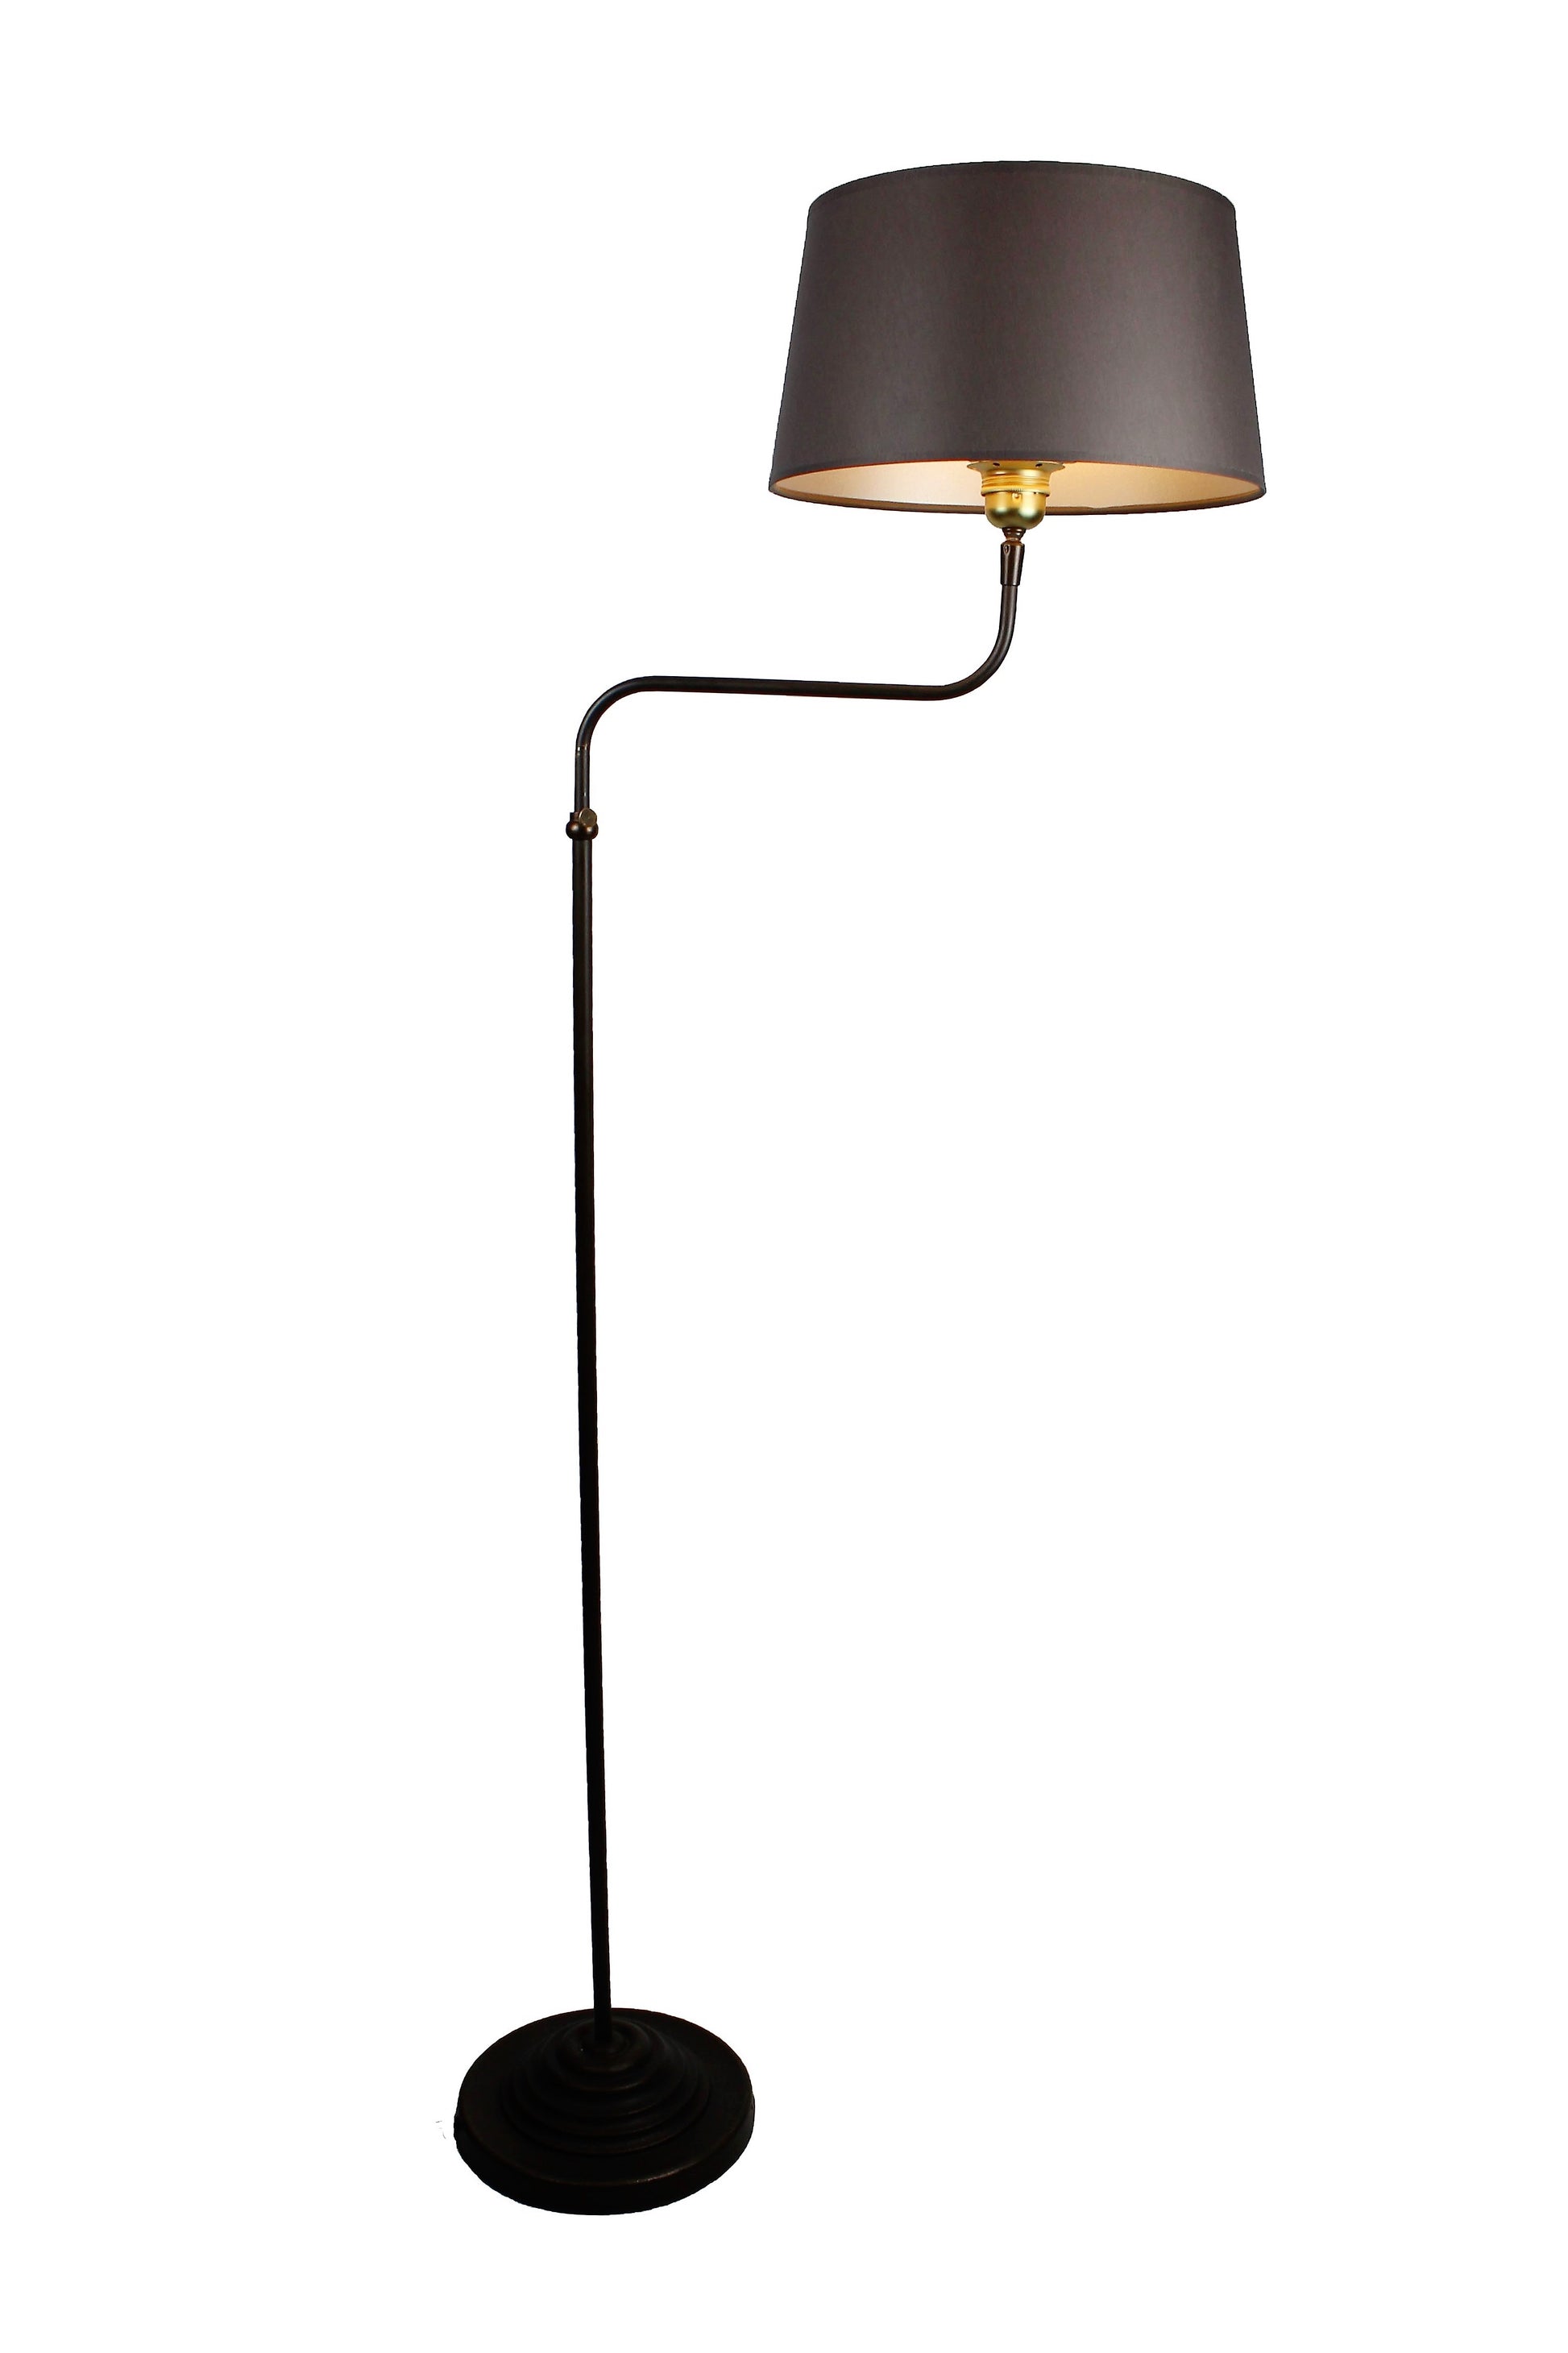 Stehlampe höhenverstellbar in Metall dunkelbraun mit Lampenschirm grau